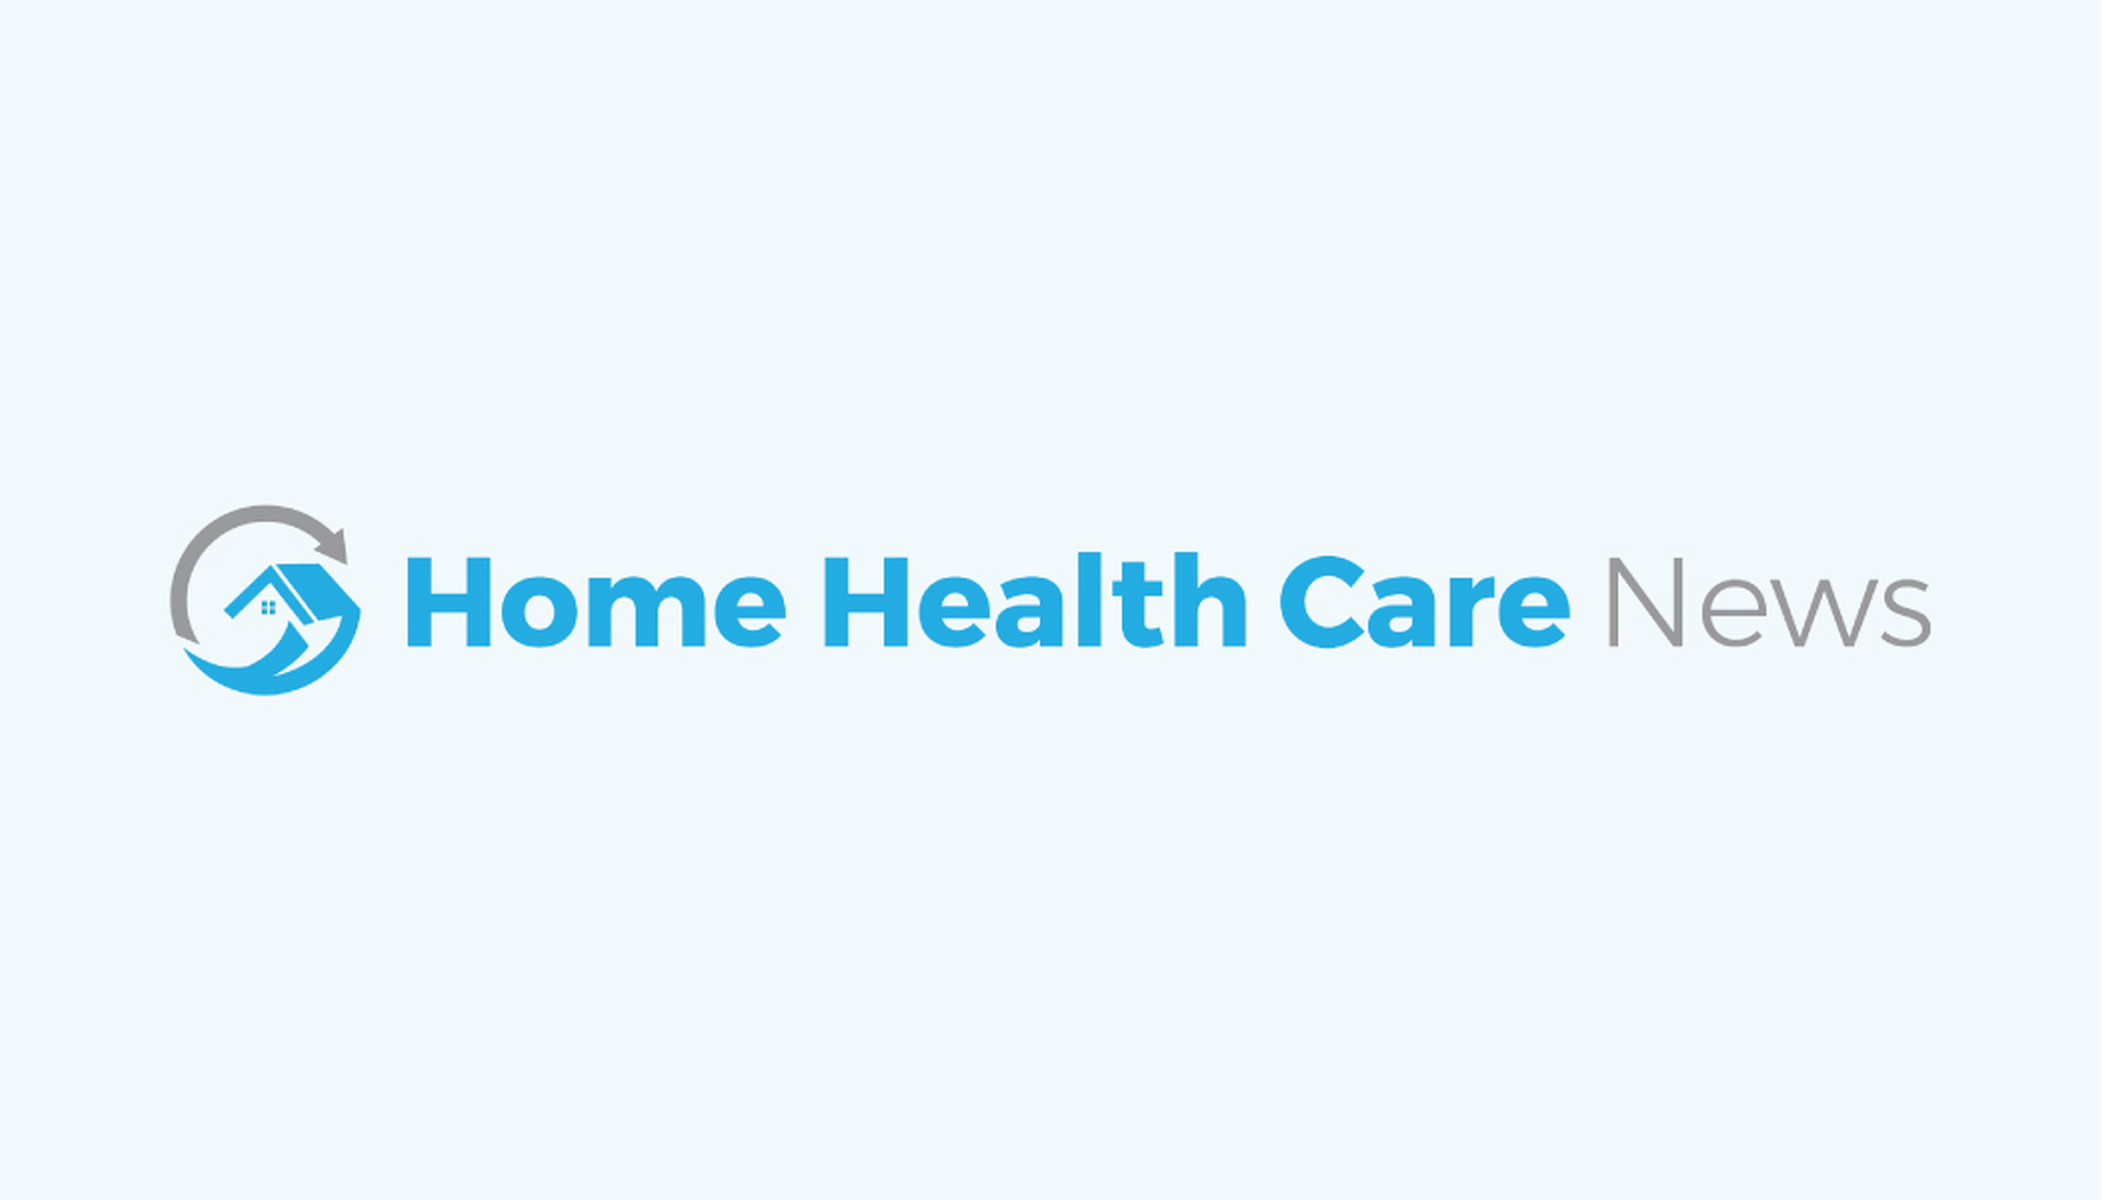 Home Health Care News logo graphic